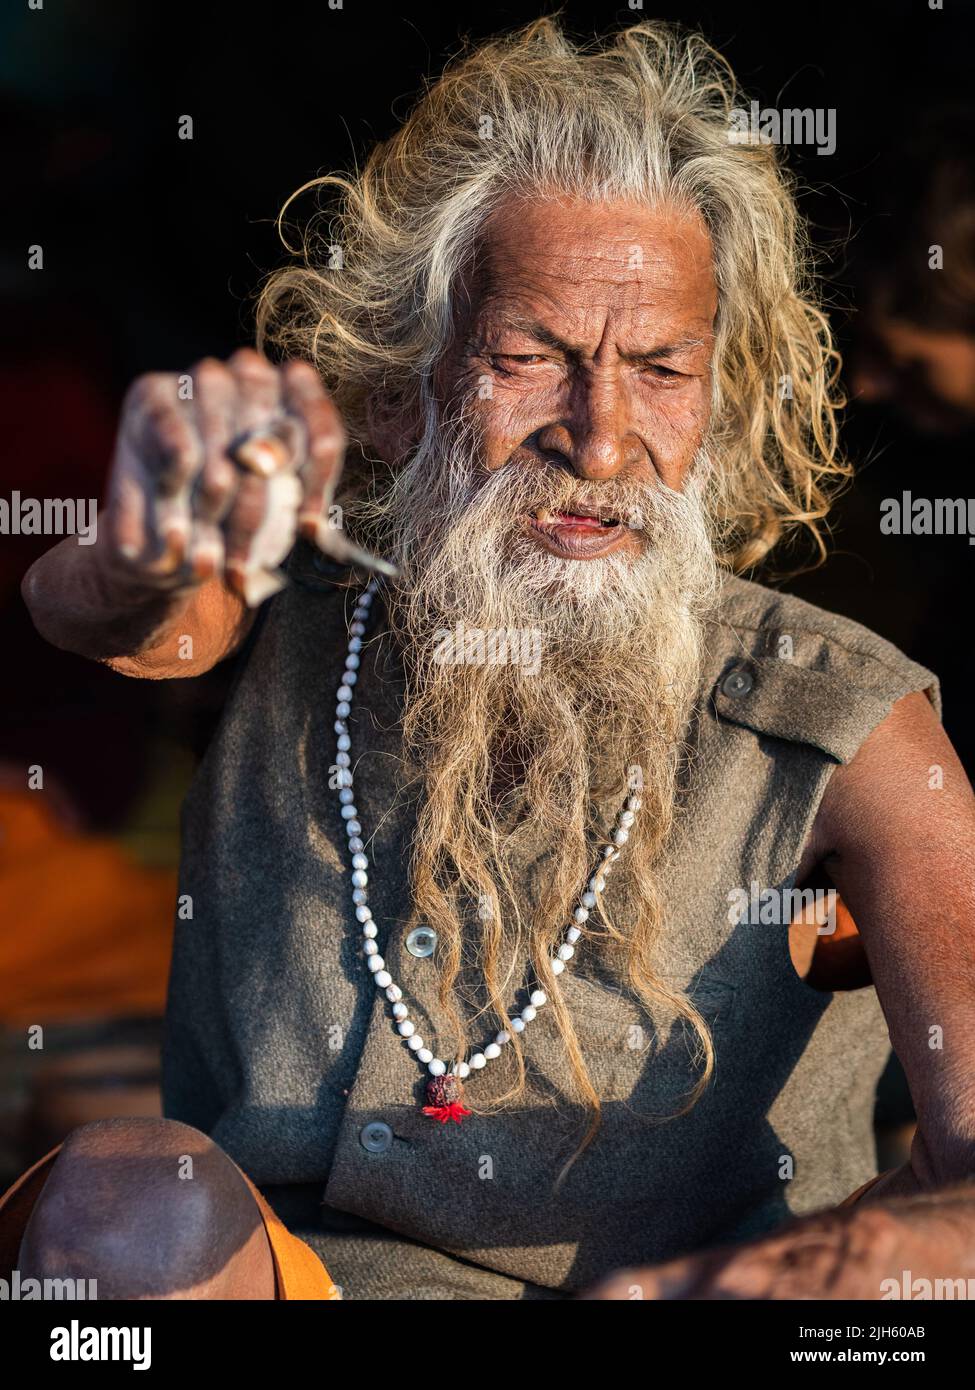 Der heilige indische Mann Amar Bharati Urdhavaahu, der seinen Arm zu Ehren des Hindu-Gottes Shiva seit über 40 Jahren angehoben hat, beim Kumbh Mela Festival in Indien. Stockfoto